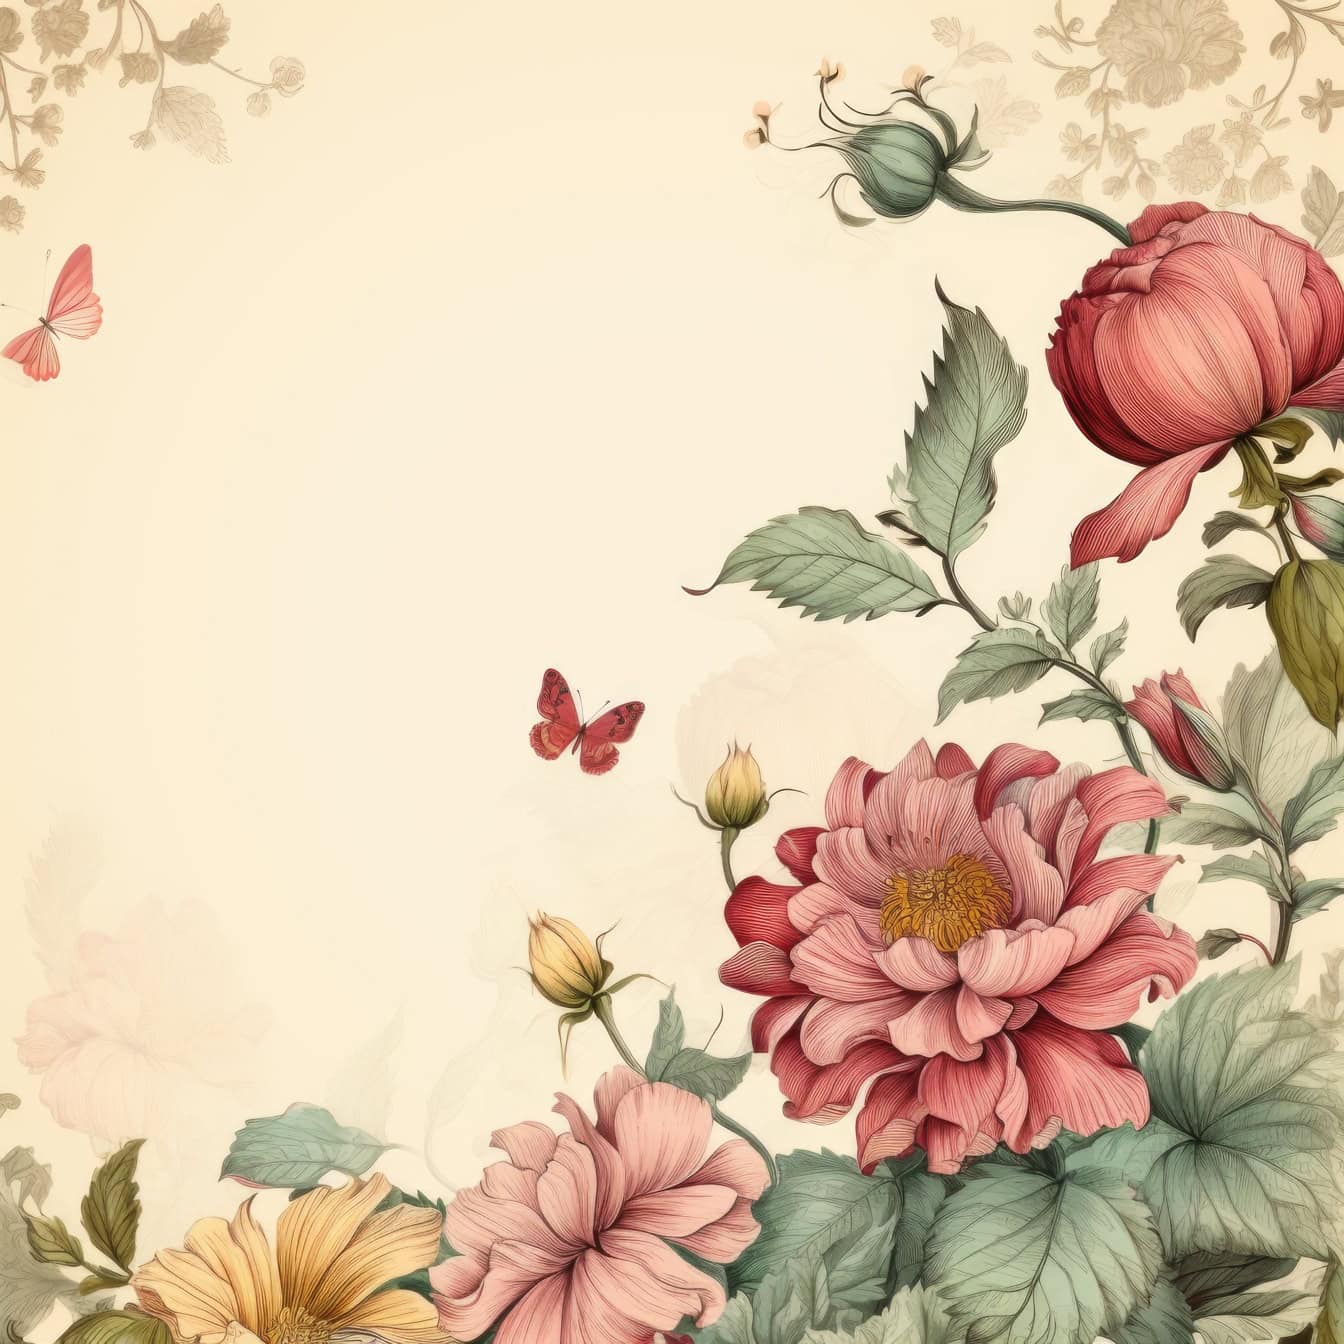 꽃과 나비의 오래된 스타일의 수채화 그래픽